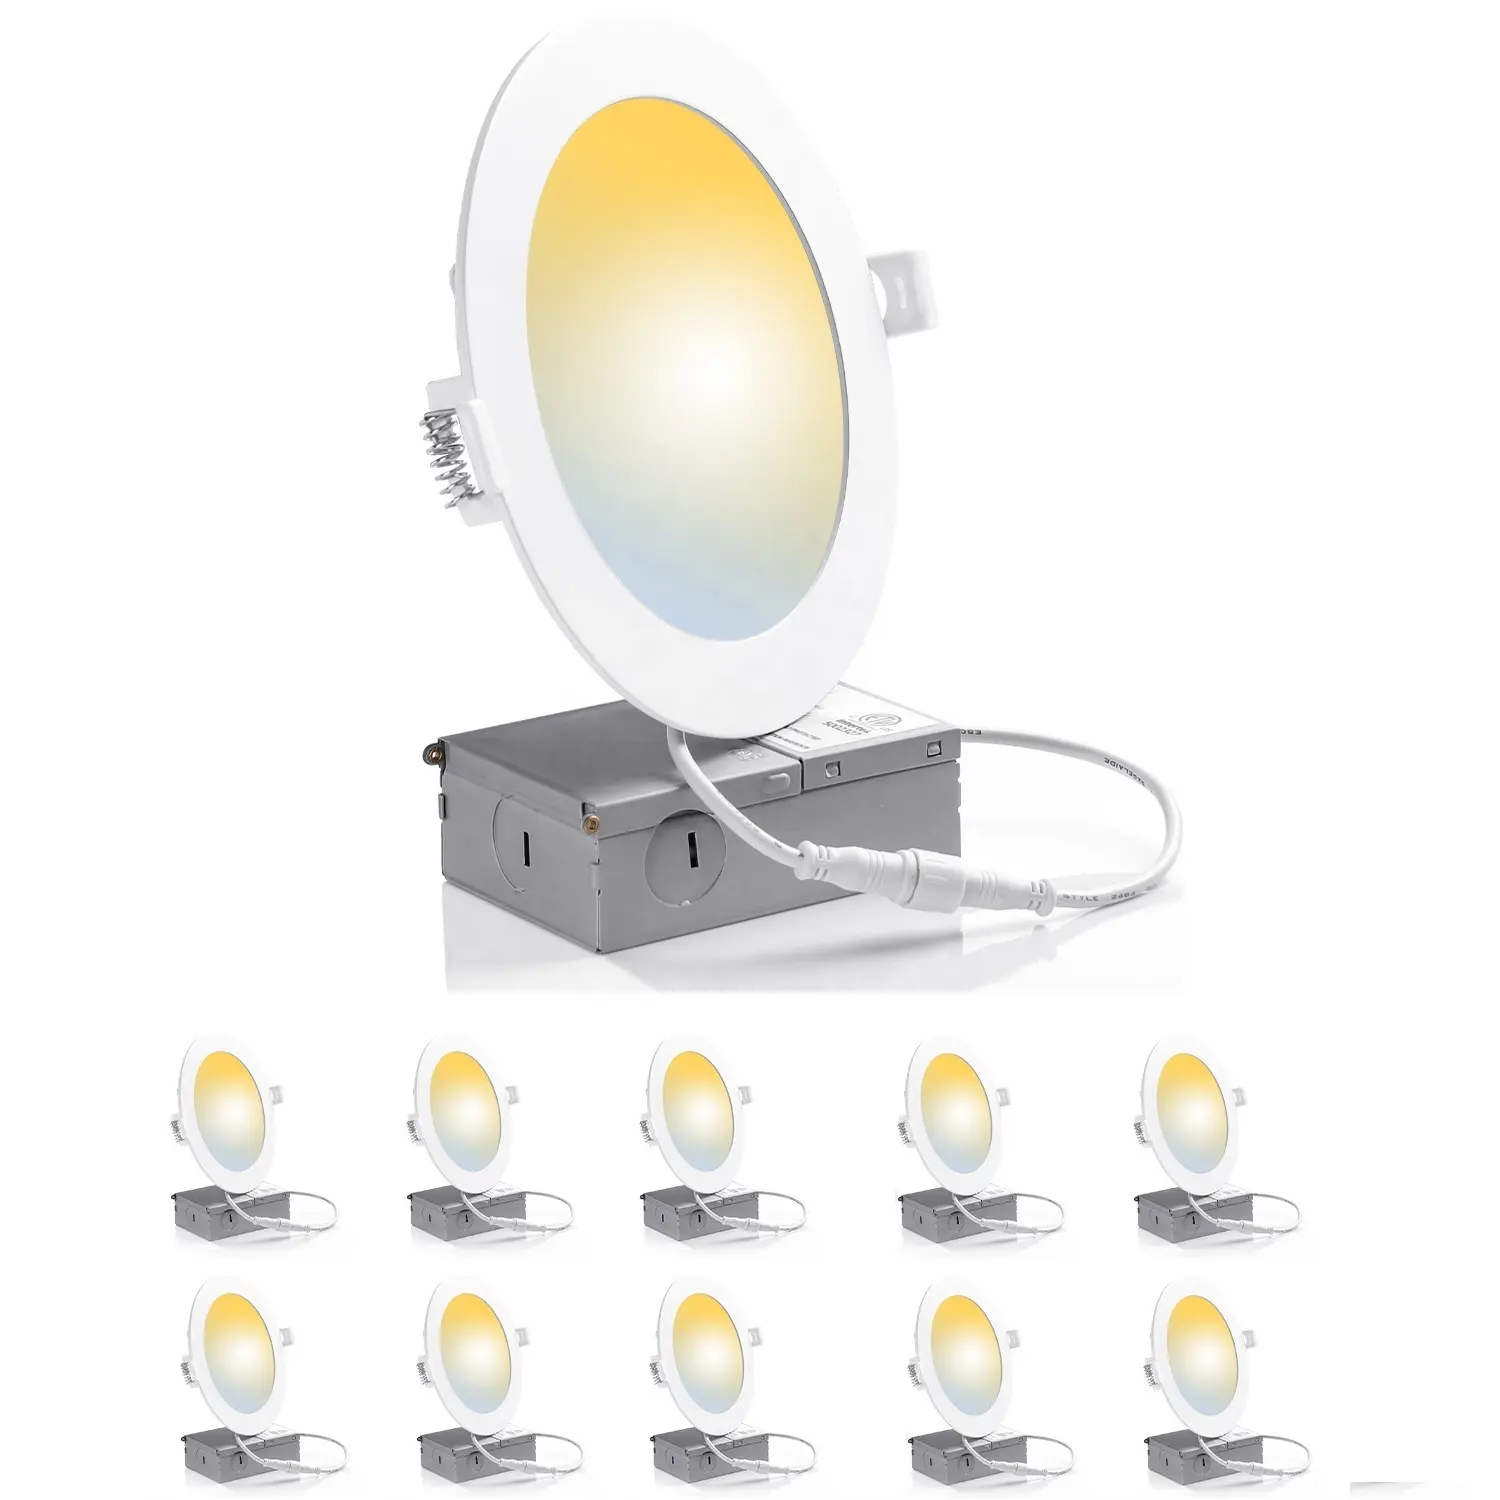 工場直販ETL超薄型調光可能 (5002327) 埋め込み6インチ12WLEDダウンライト